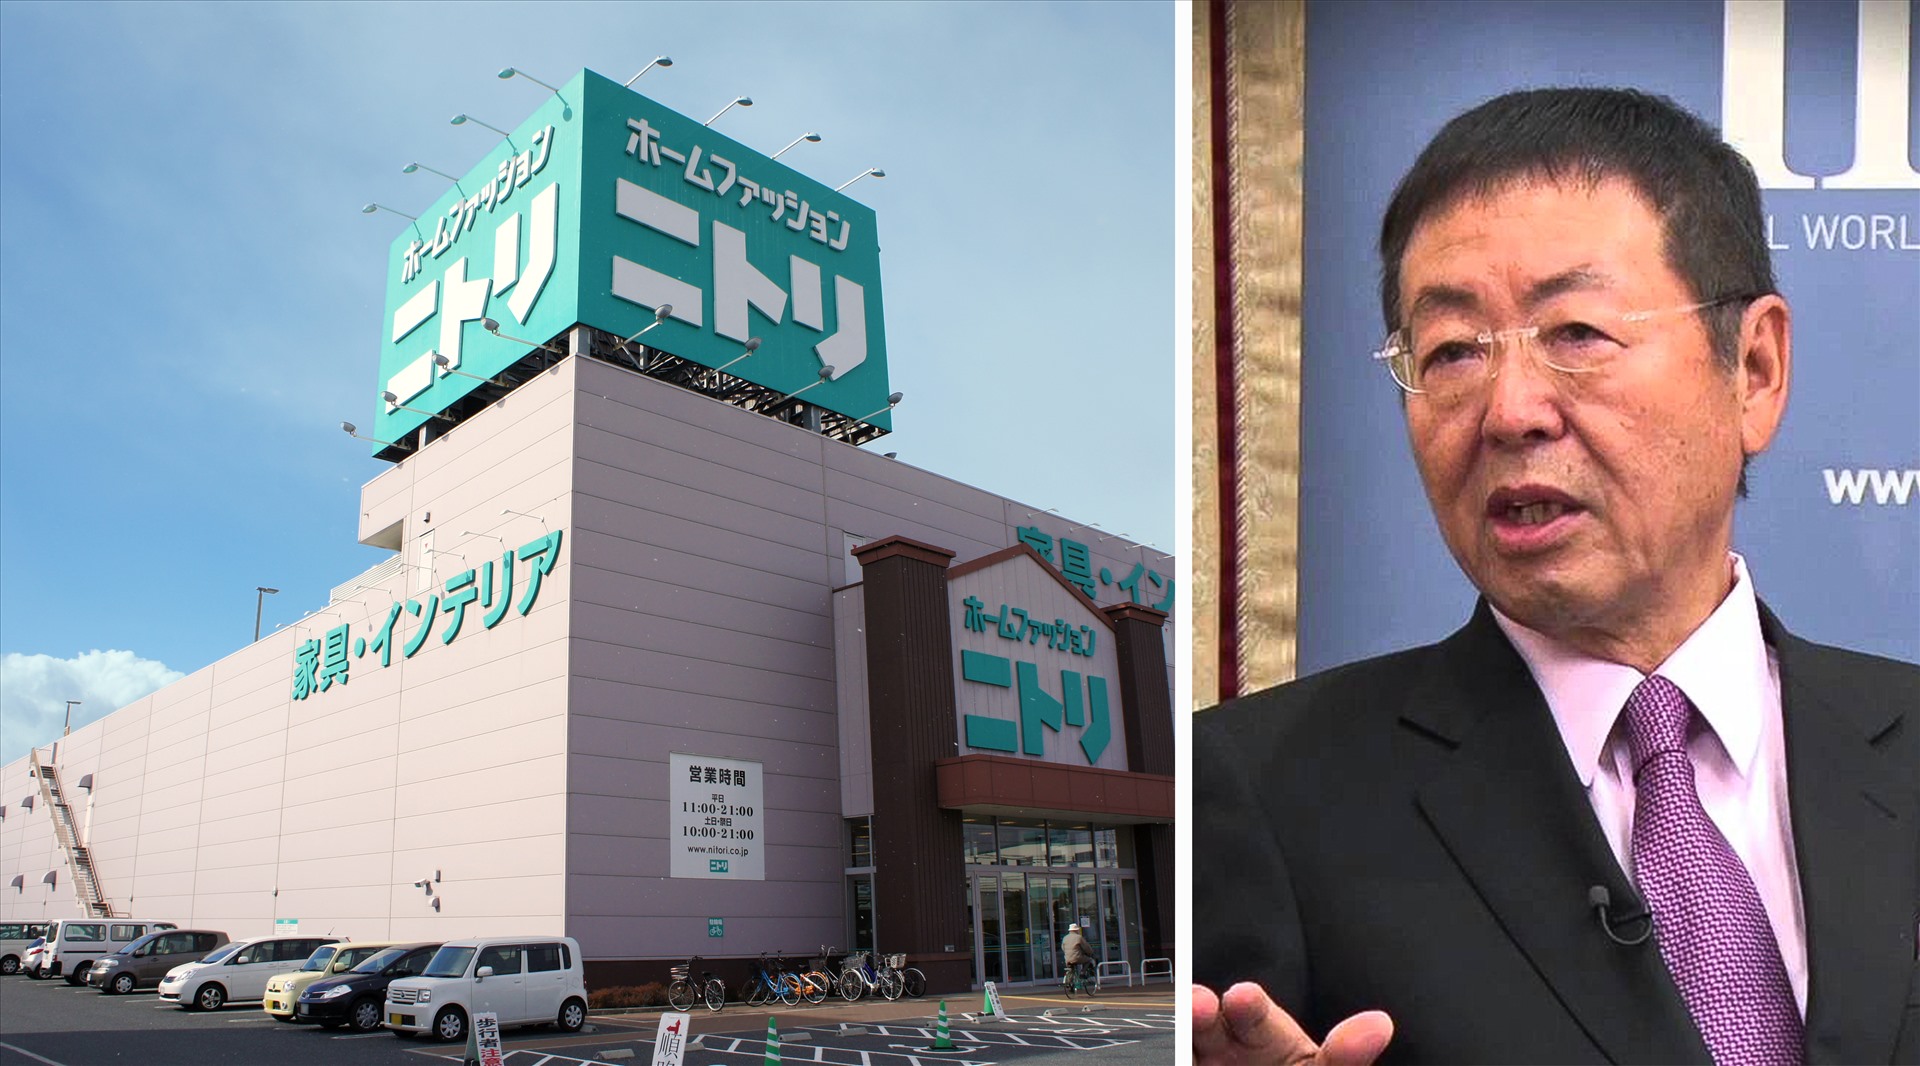 Akio Nitori là người sáng lập chuỗi cửa hàng nội thất giảm giá Nitori Holdings. Ông thôi giữ chức chủ tịch công ty vào năm 2016. Ngoài Nhật Bản, chuỗi cửa hàng này còn xuất hiện tại Trung Quốc, Đài Loan (Trung Quốc) và Mỹ. Đồ họa: Phan Anh